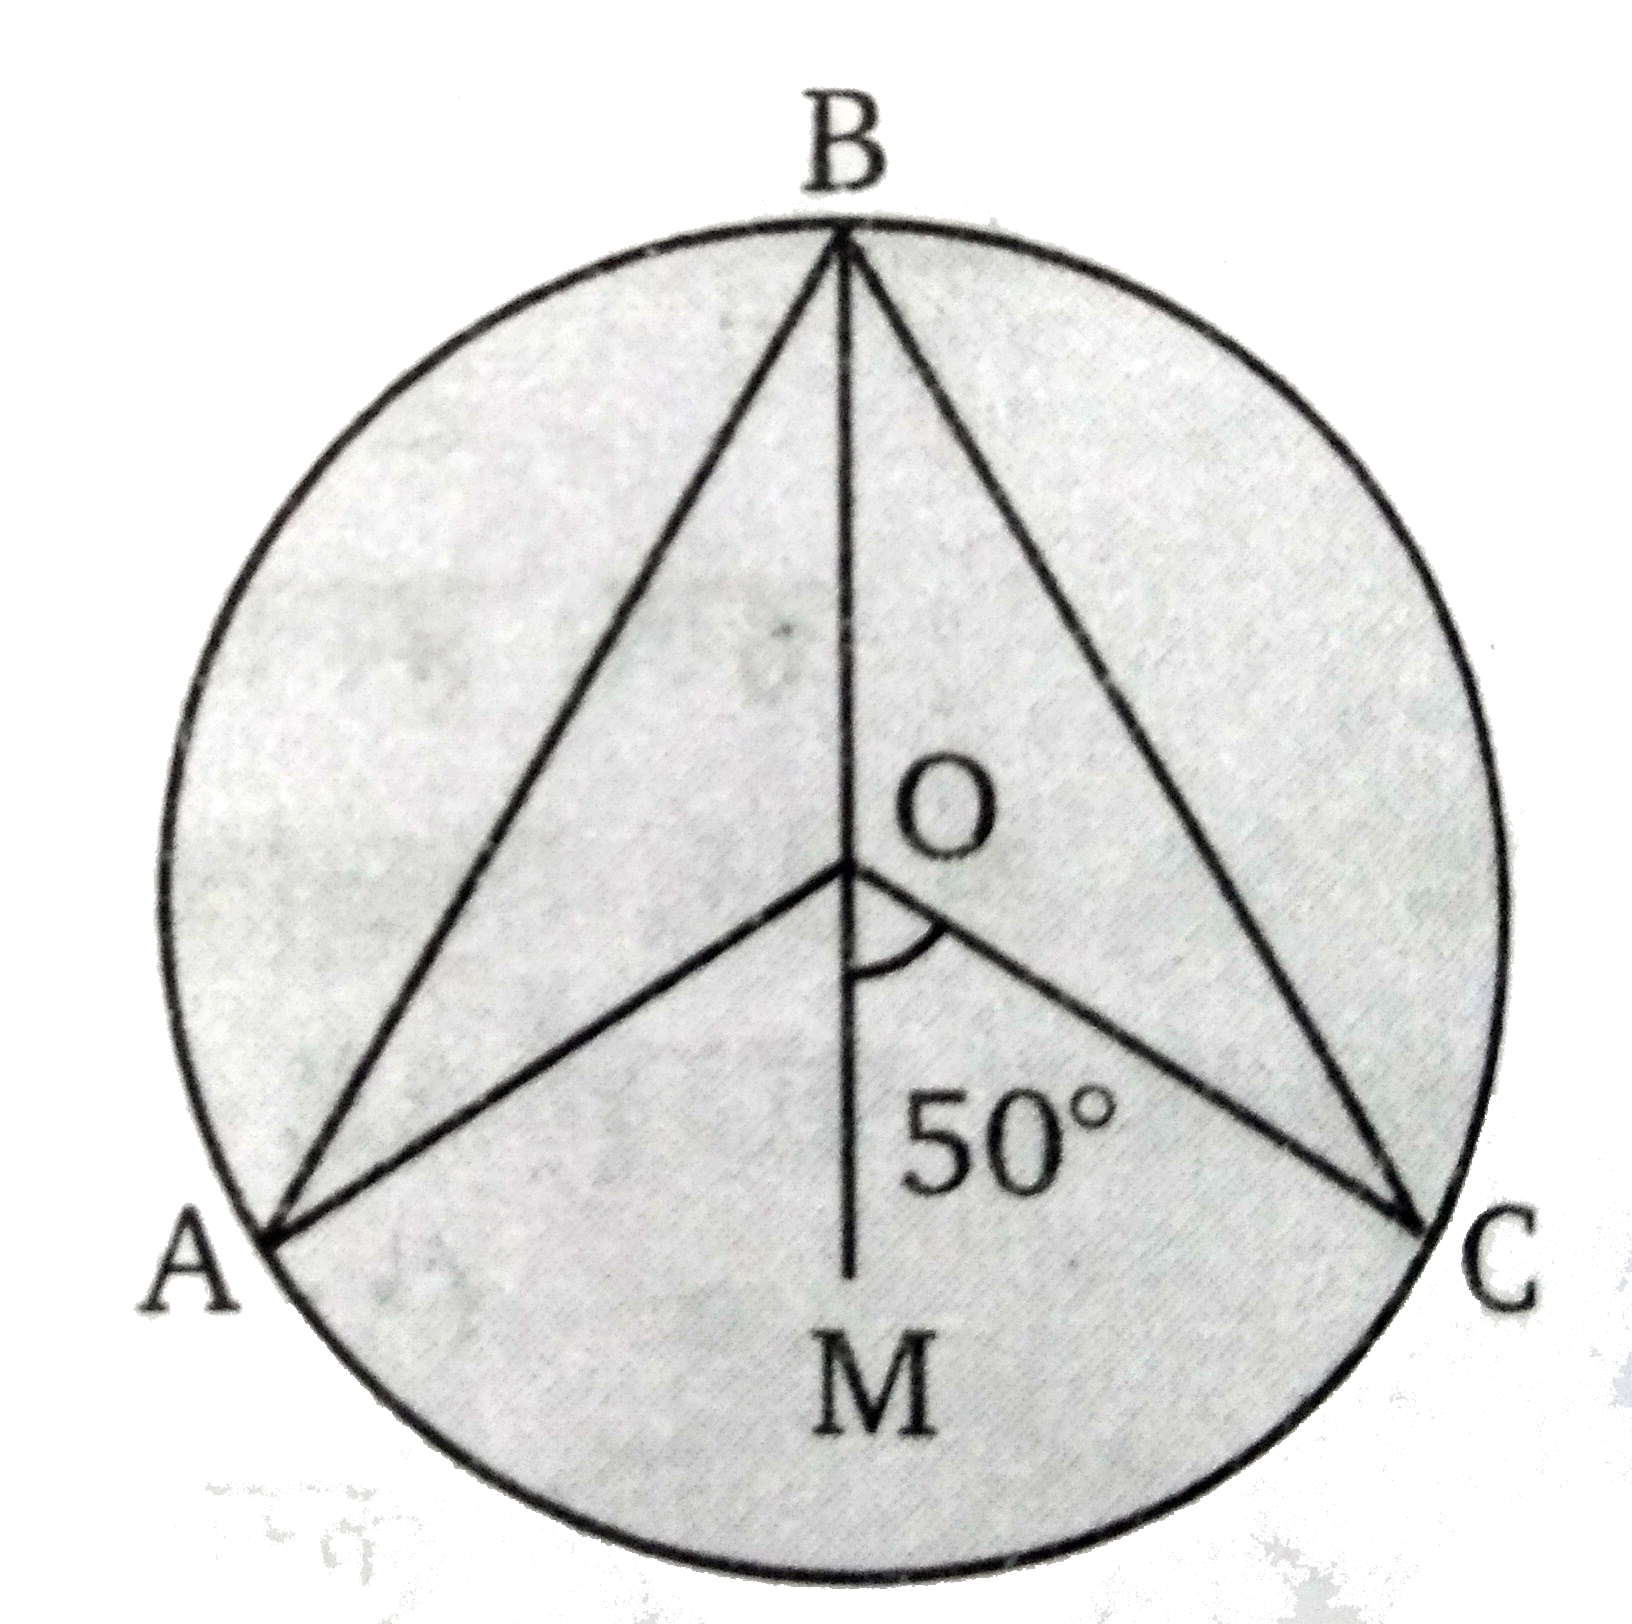 चित्र में, O वृत्त का  केन्द्र है तथा रेखा OB , angle AOC  की अर्द्धक है। तब angle ABC  का मान ज्ञात कीजिए।